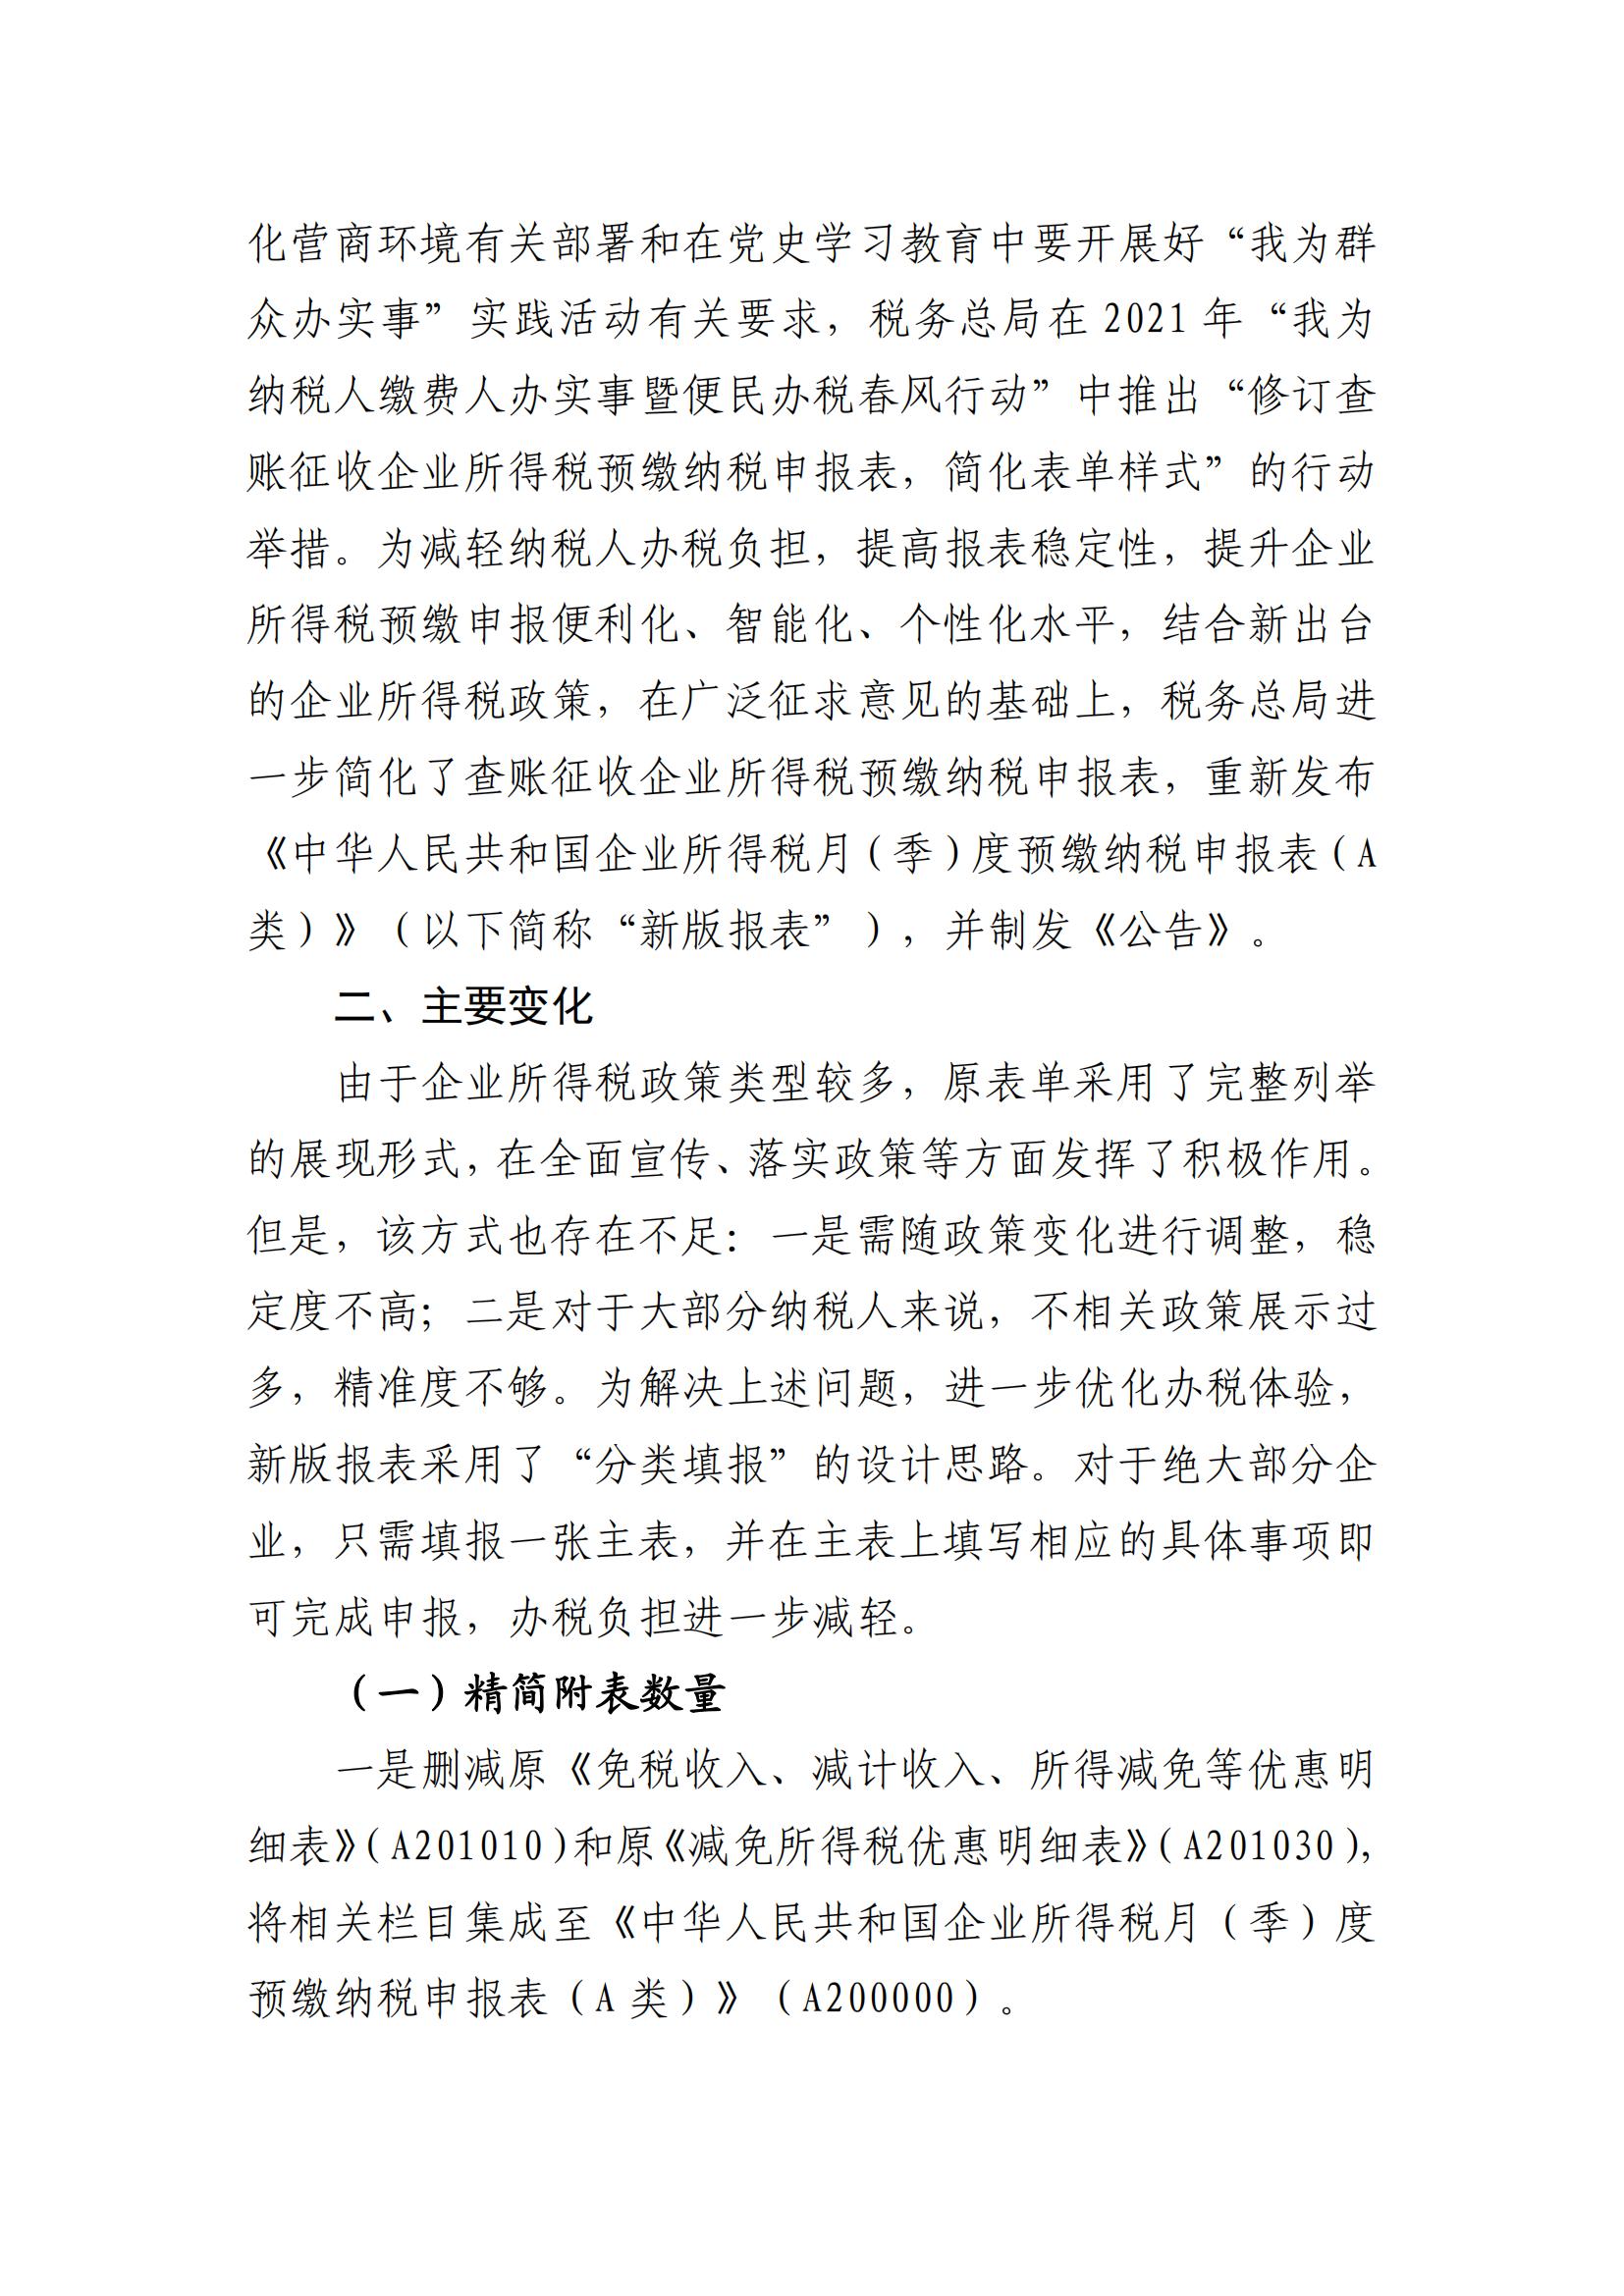 广州市从化区财政局关于《国家税务总局关于发布〈中华人民共和国企业所得税月（季）度预缴纳税申报表（A类）〉的公告》的解读_01.jpg